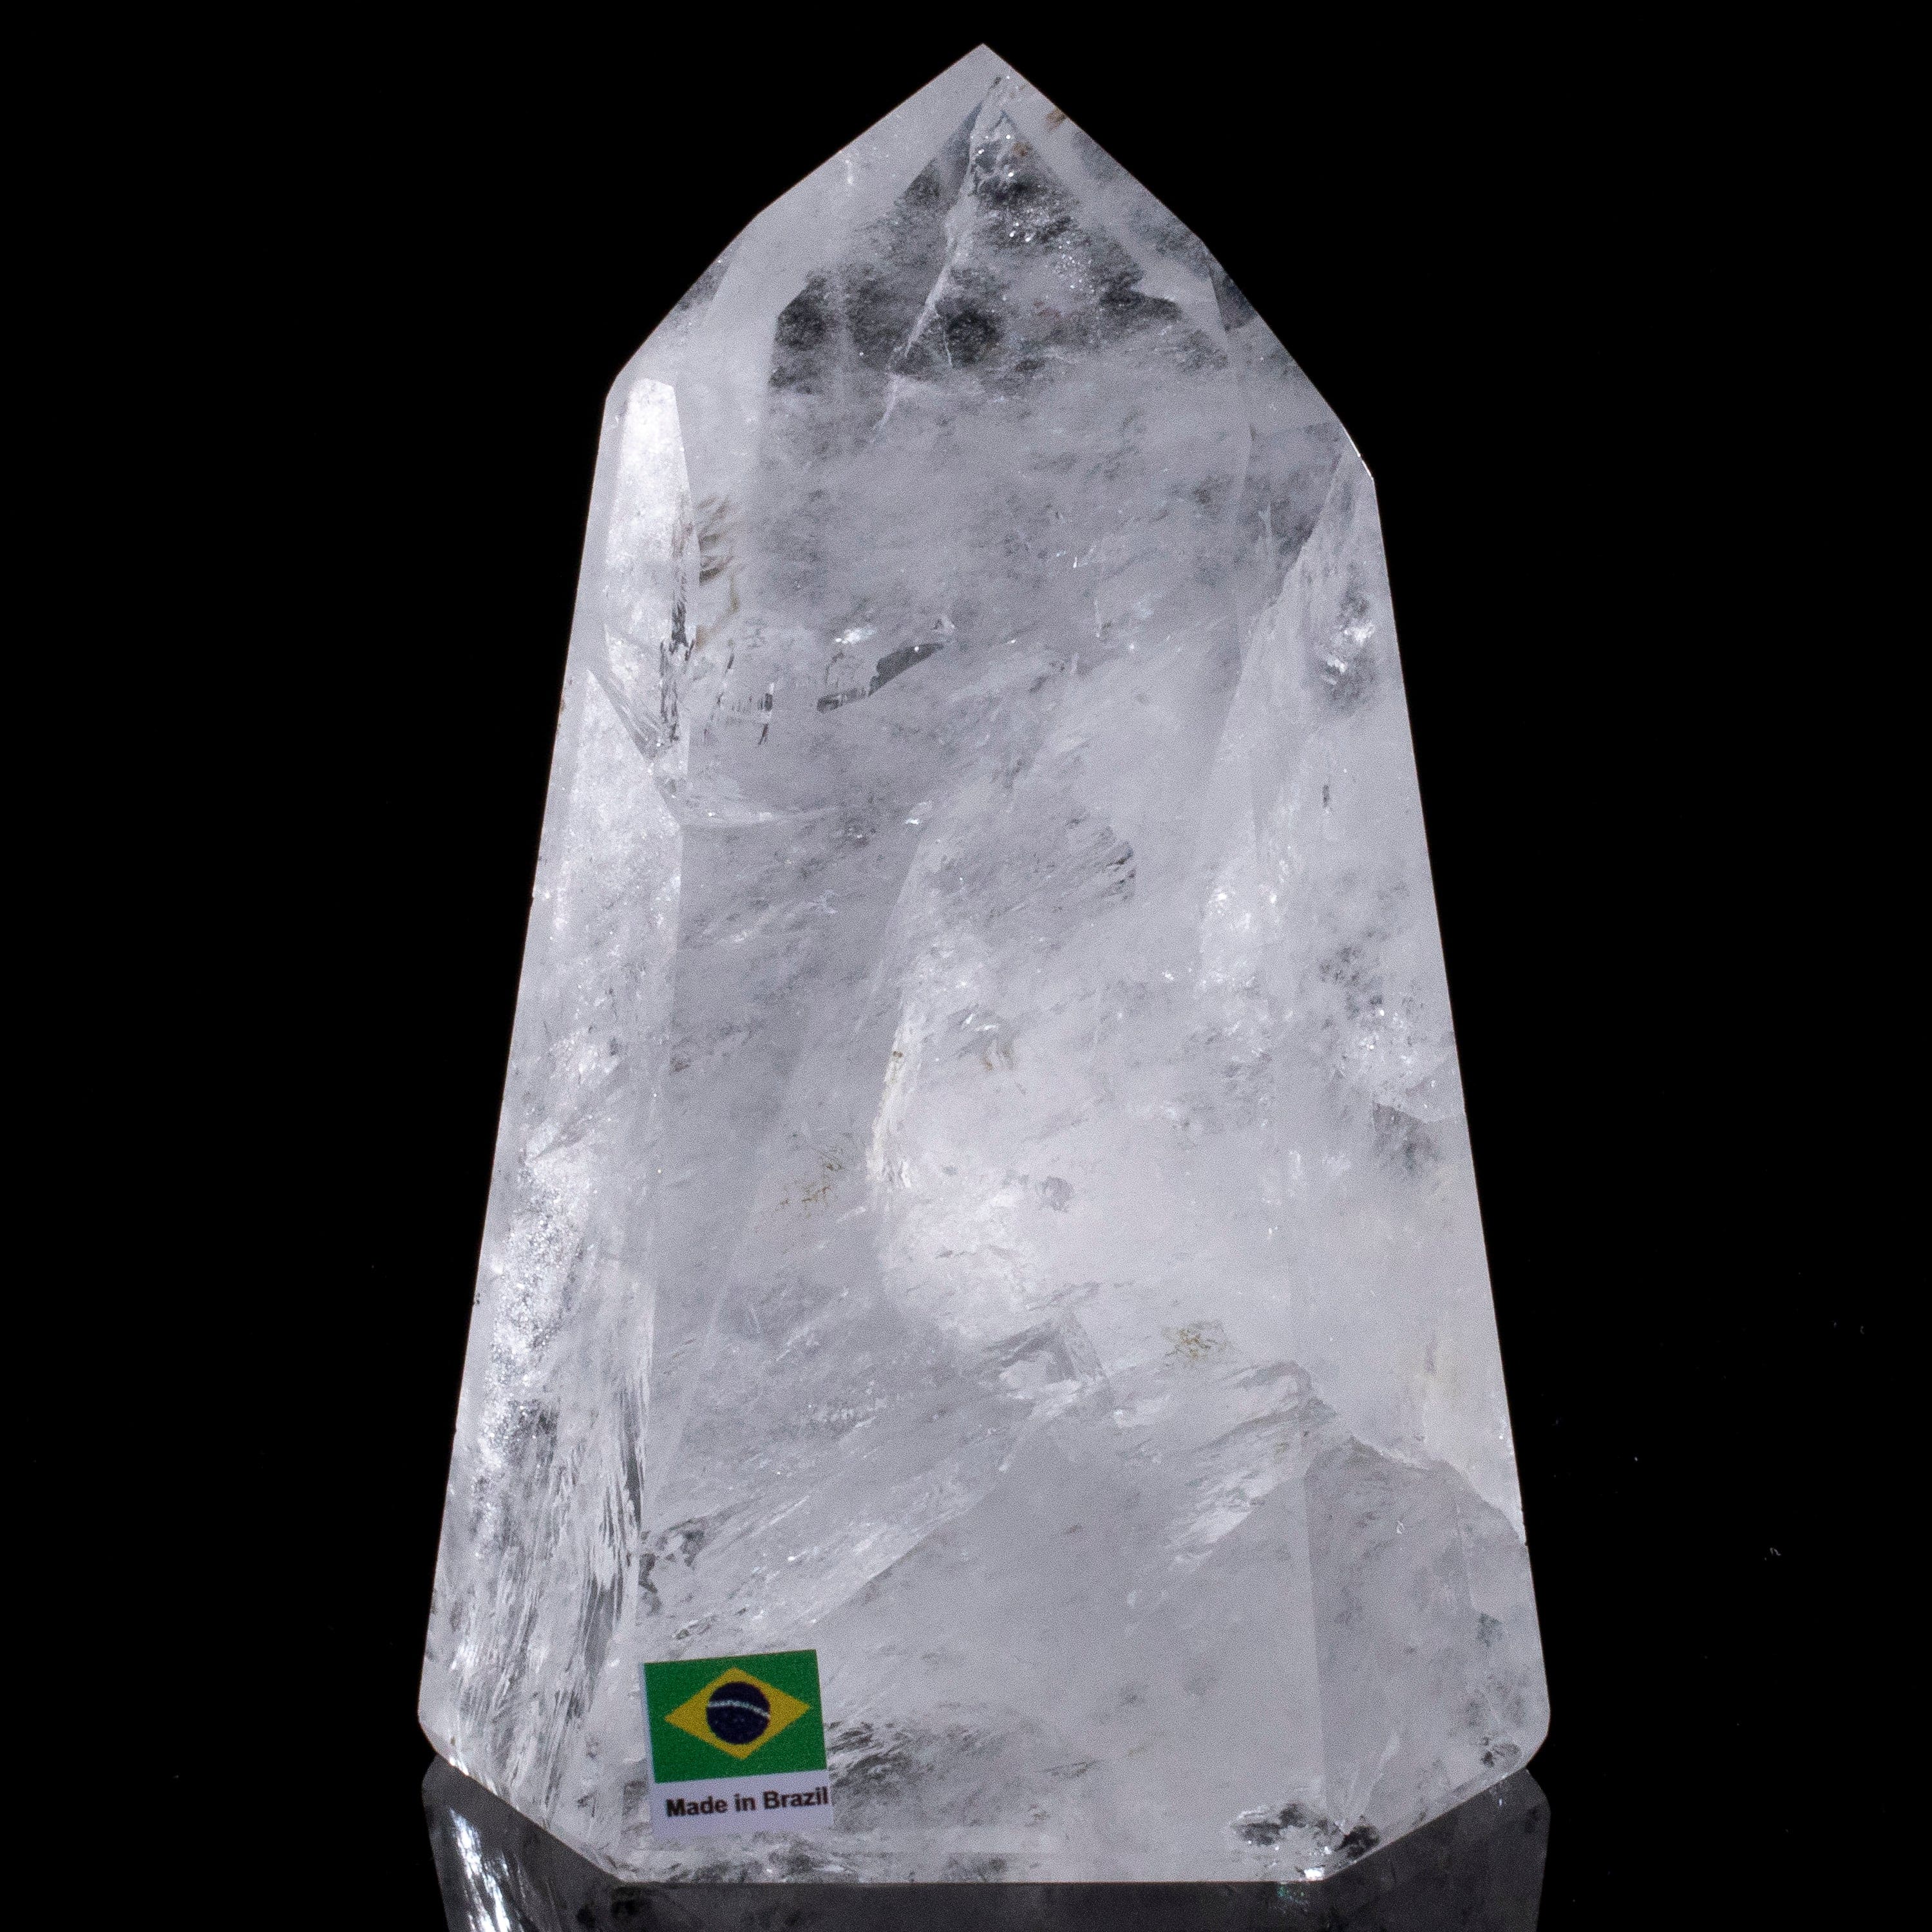 Kalifano Quartz Natural Quartz Obelisk from Brazil - 6" / 1,142 grams QZ1500.010